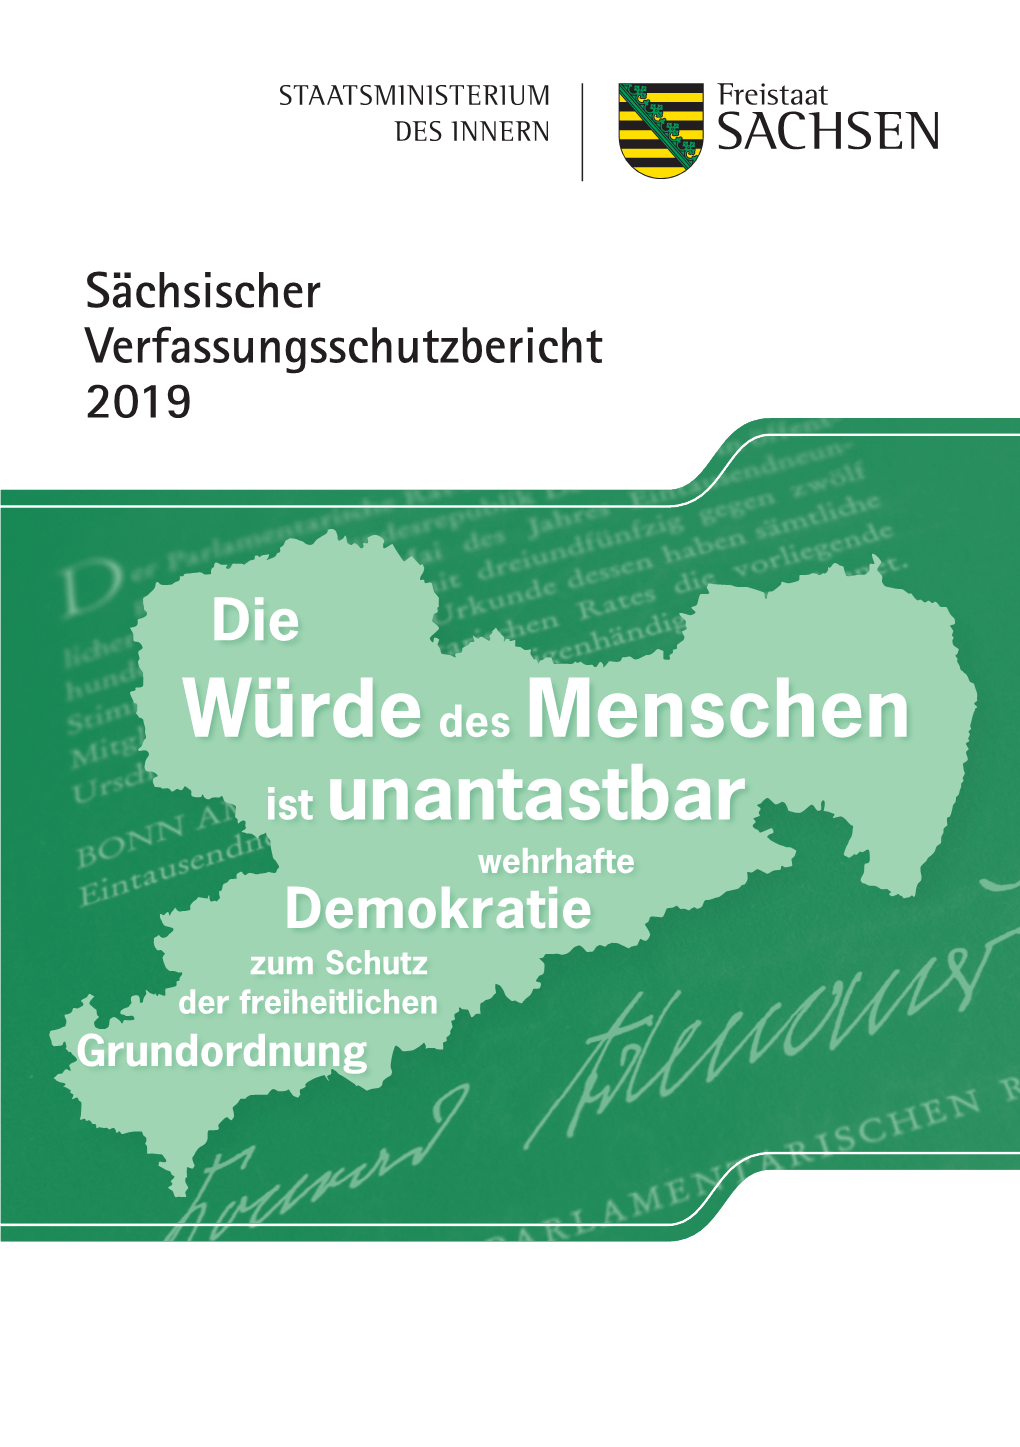 Sächsischer Verfassungsschutzbericht 2019